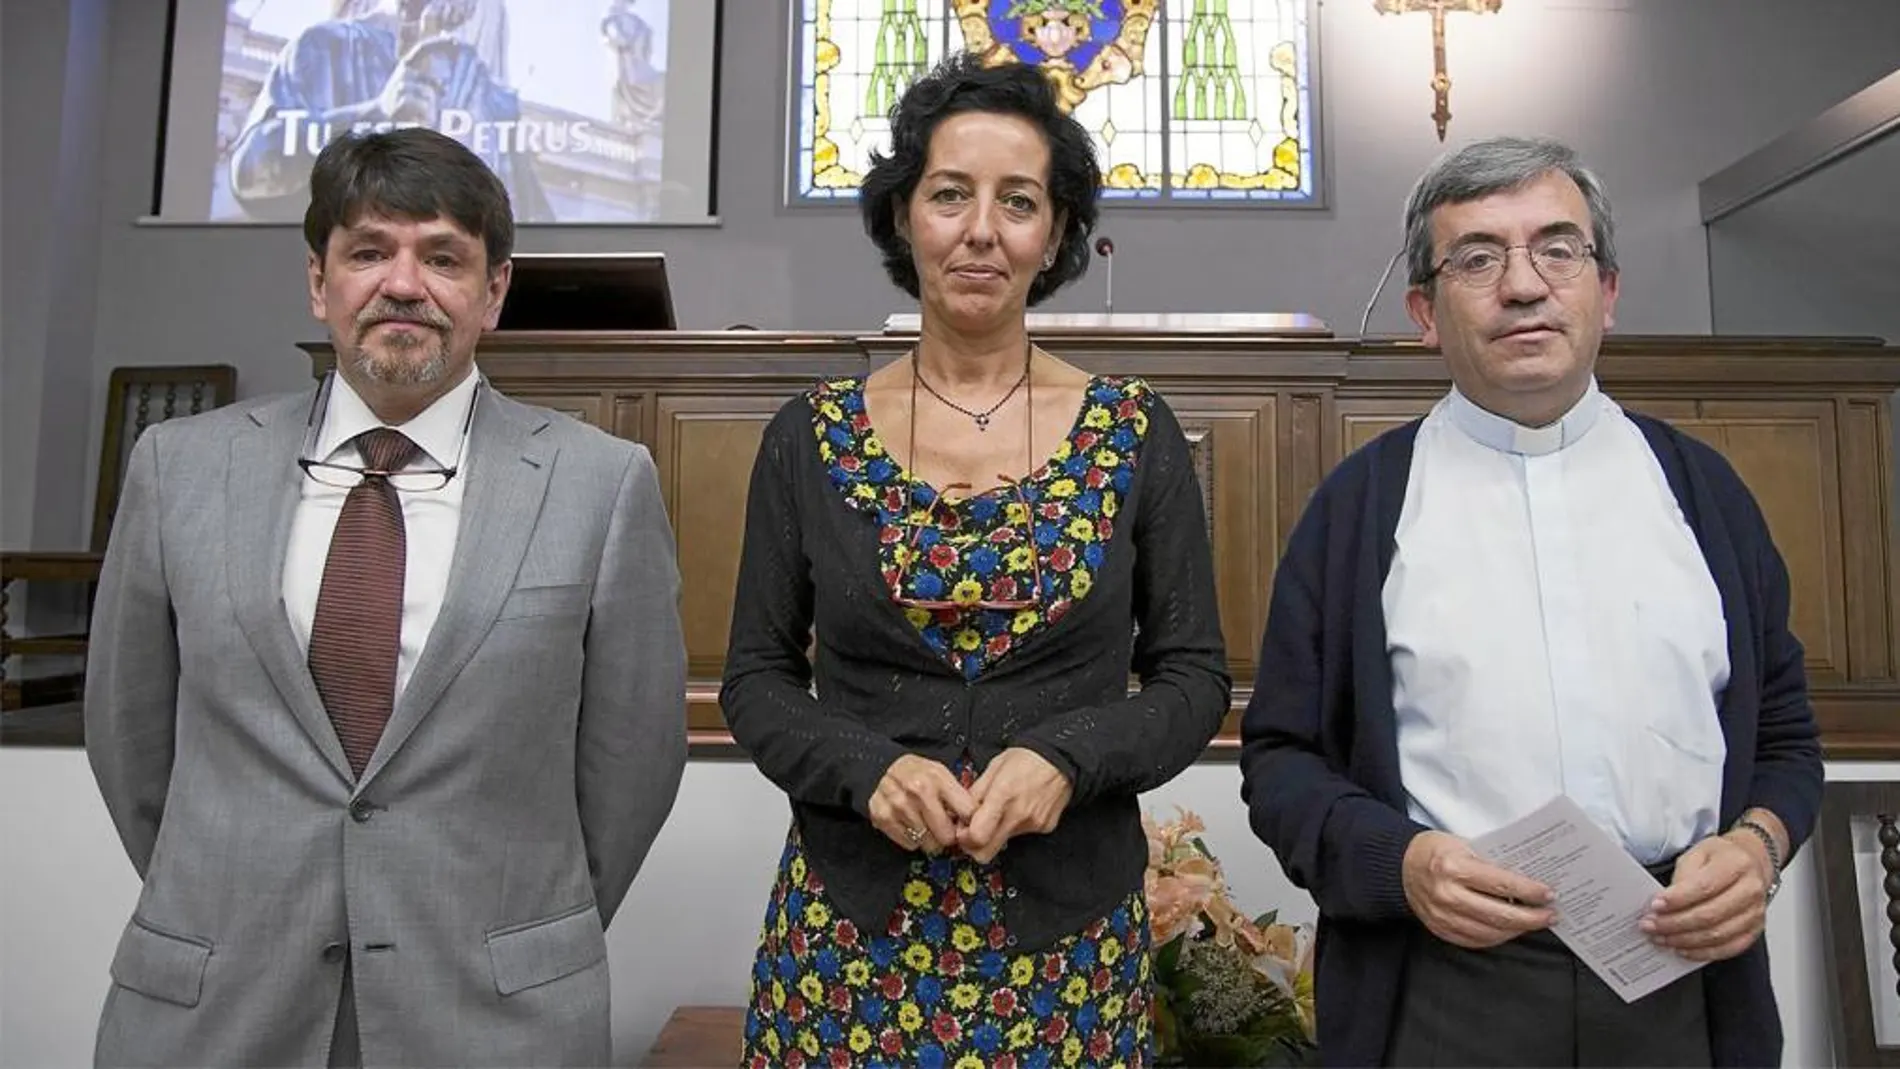 Mauricio Traeger, Mercedes Cantalapiedra y Luis Argüello presentan el III Encuentro Bloqueros con el Papa que arranca mañana en Valladolid